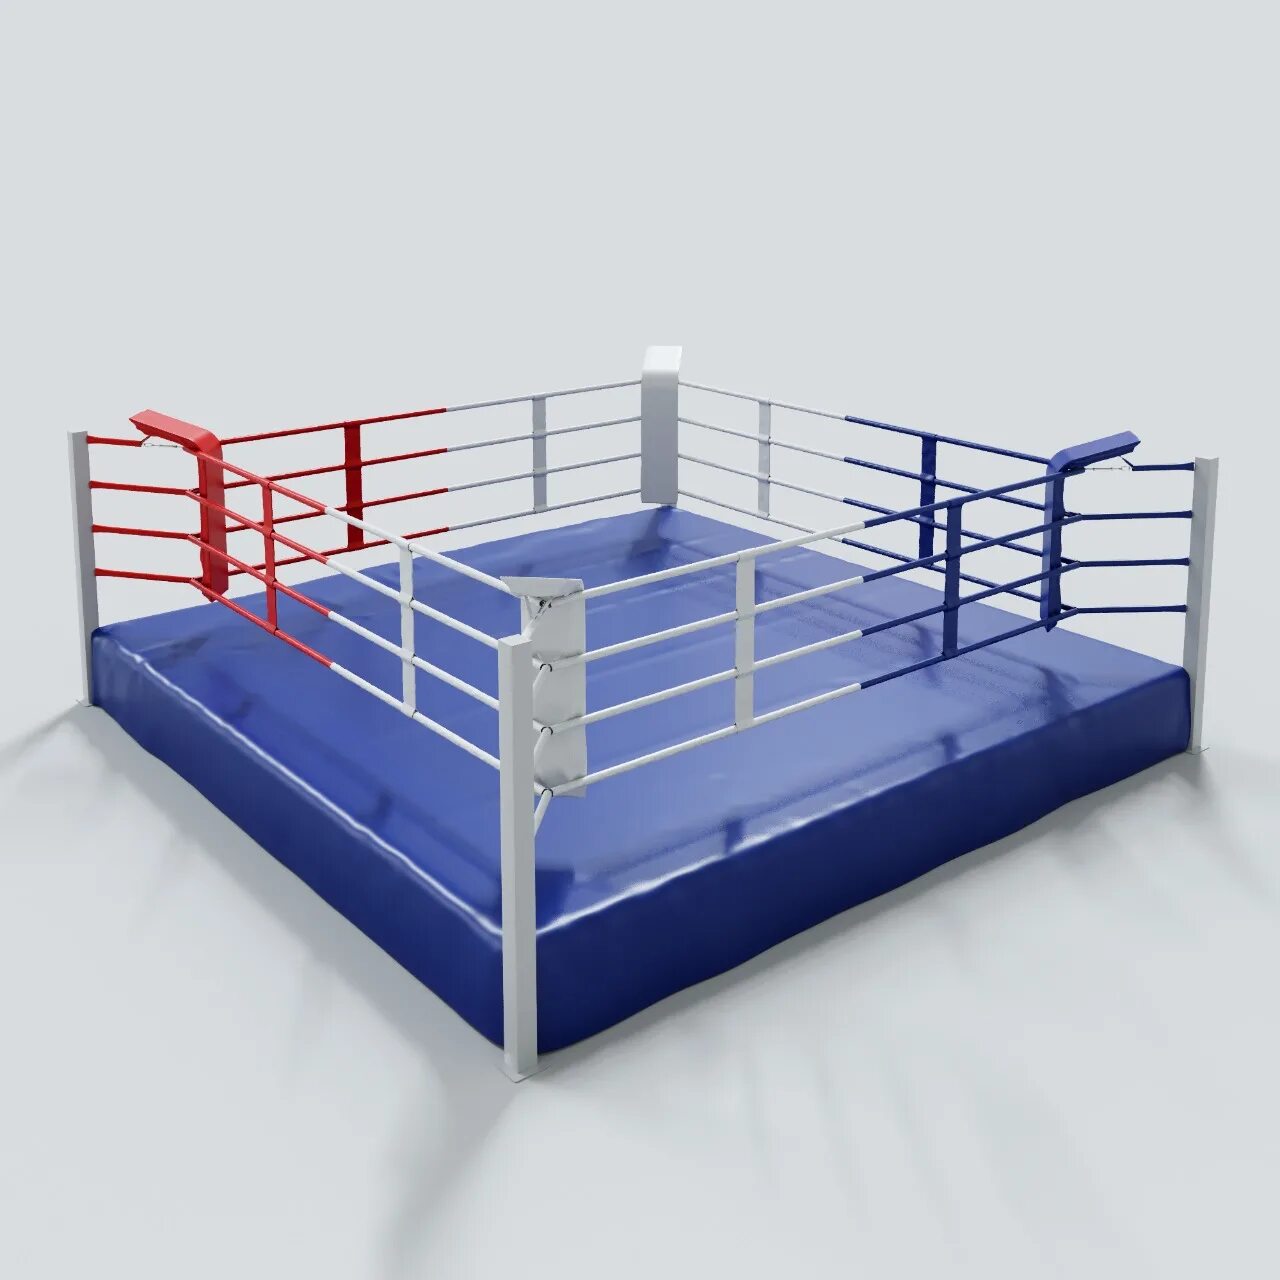 Купить бокс 5. Ринг боксерский на раме 6м х 6м (Боевая зона 5м х 5м). Ринг боксерский Грин Хилл. Ринг боксерский Грин Хилл АИБА. Боксерский ринг 5х5 на помосте 0.5 м.